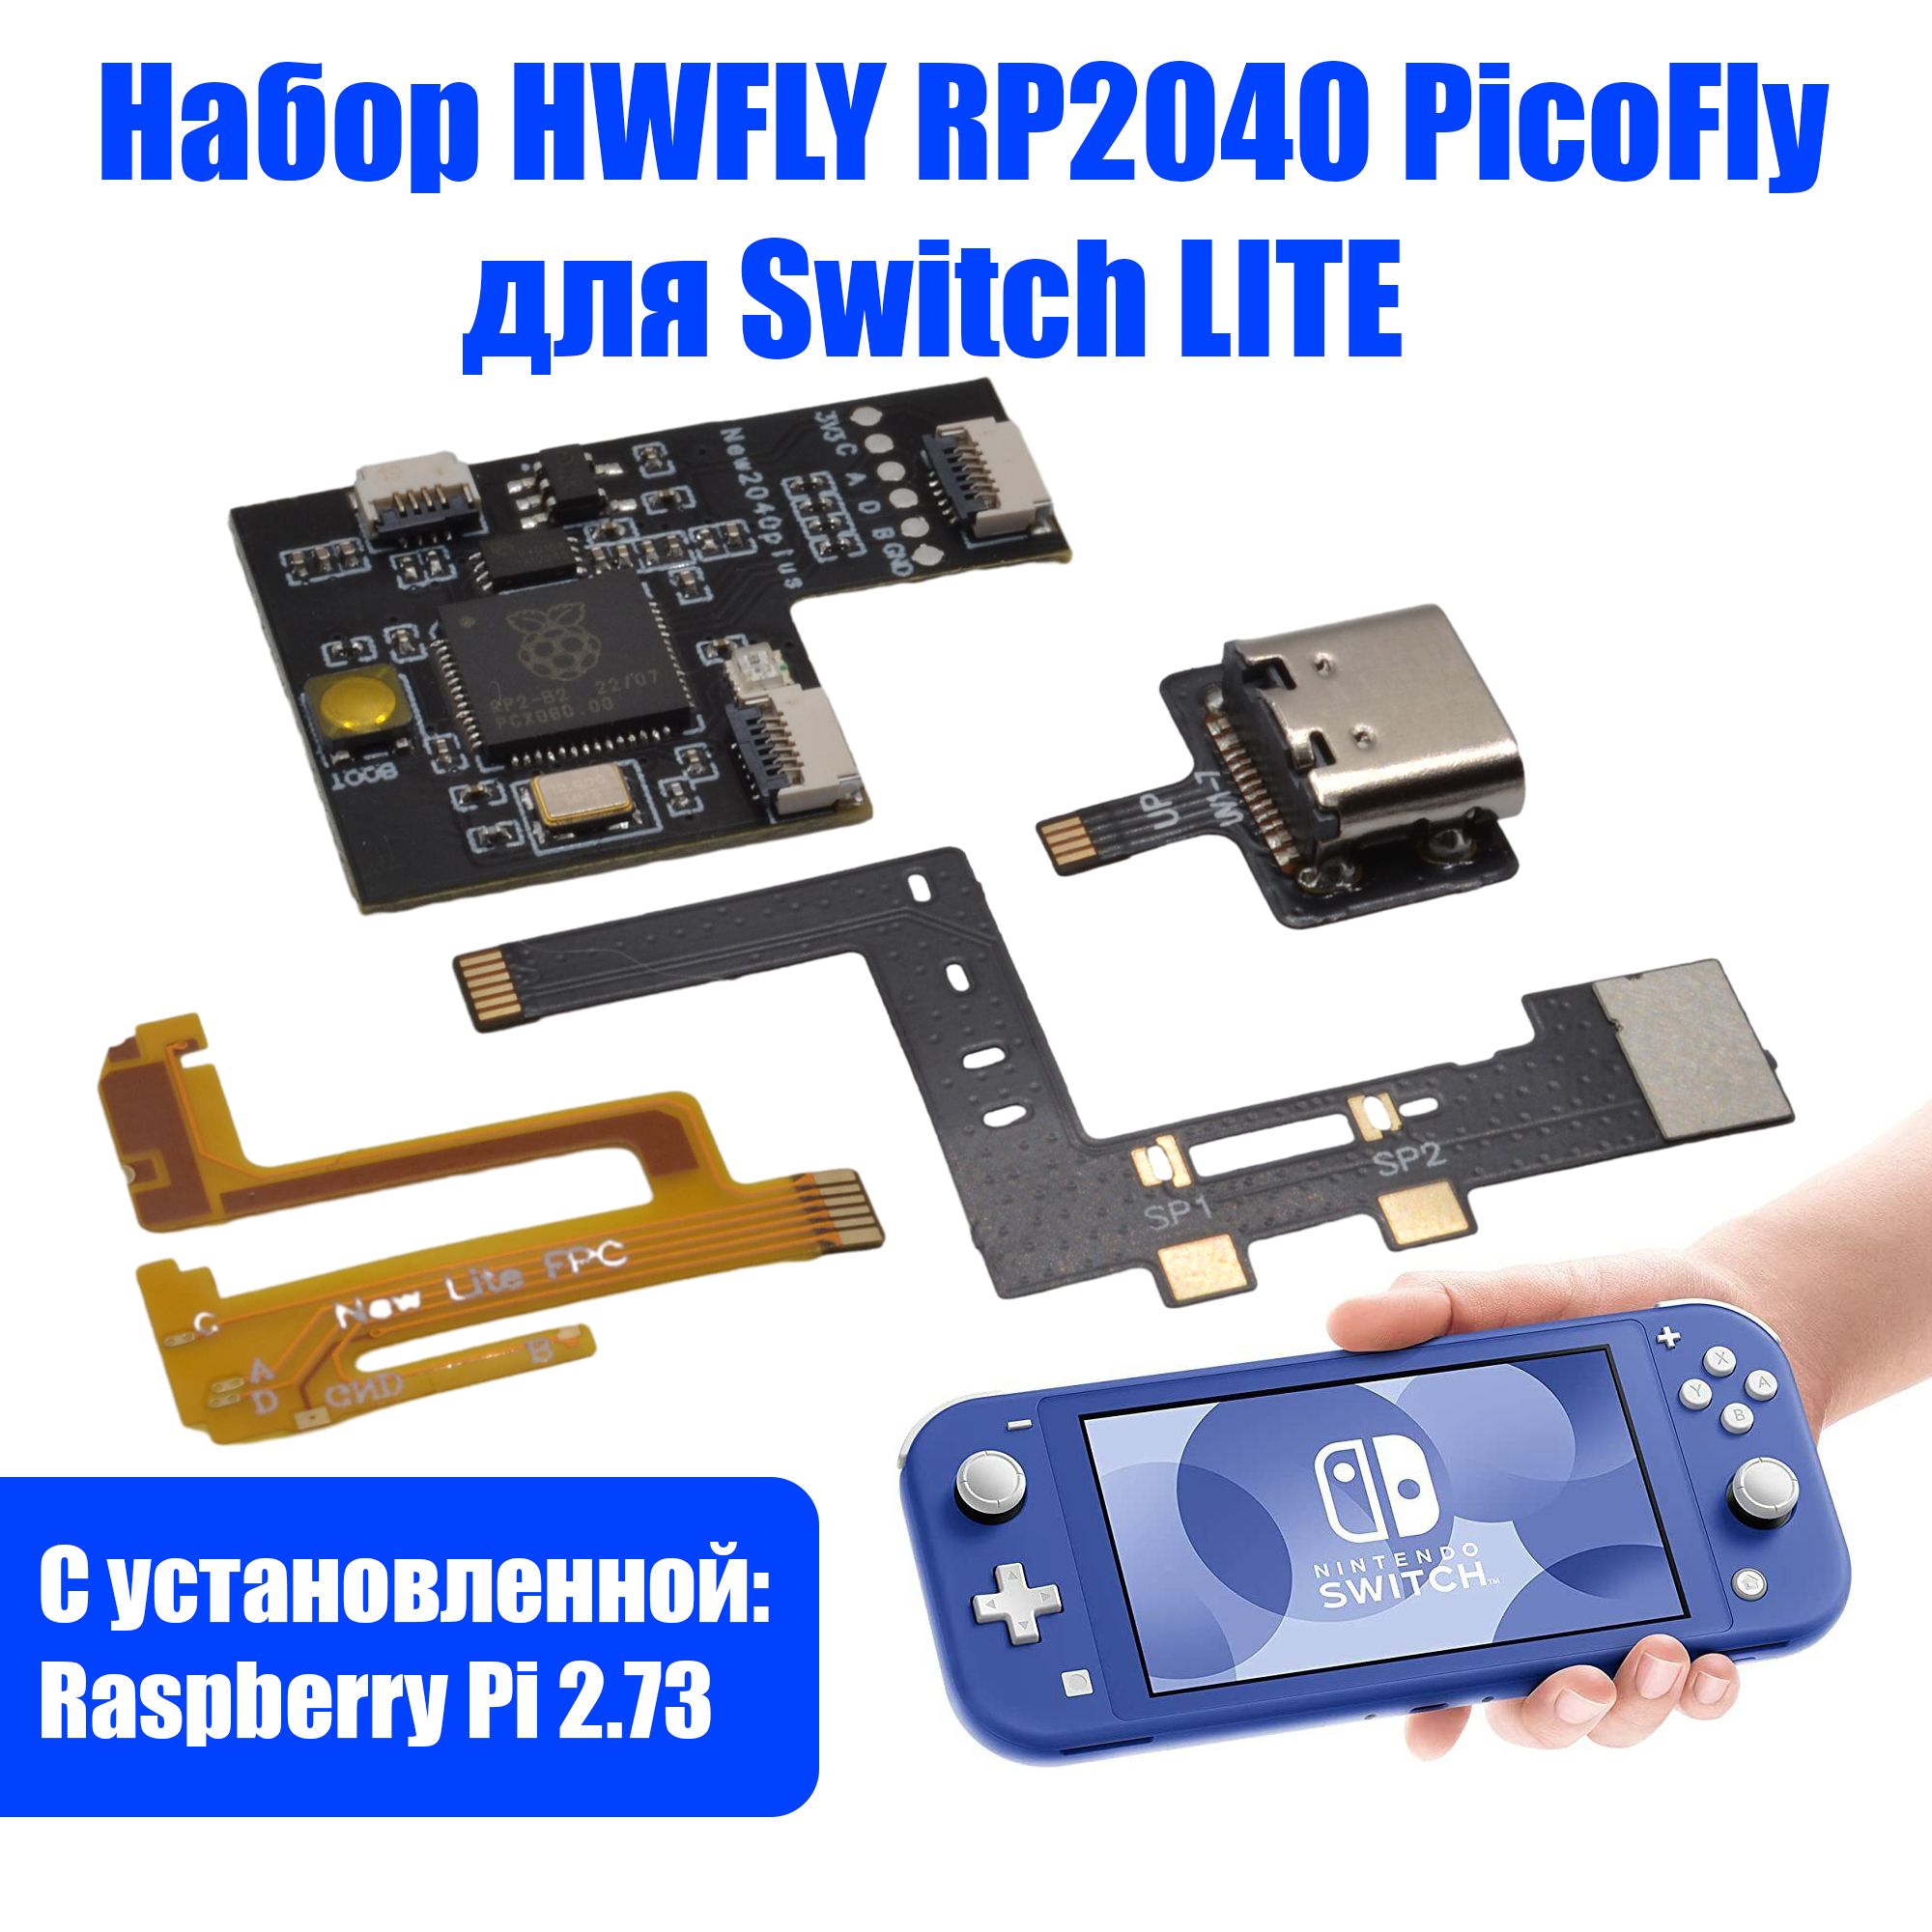 Picofly nintendo switch